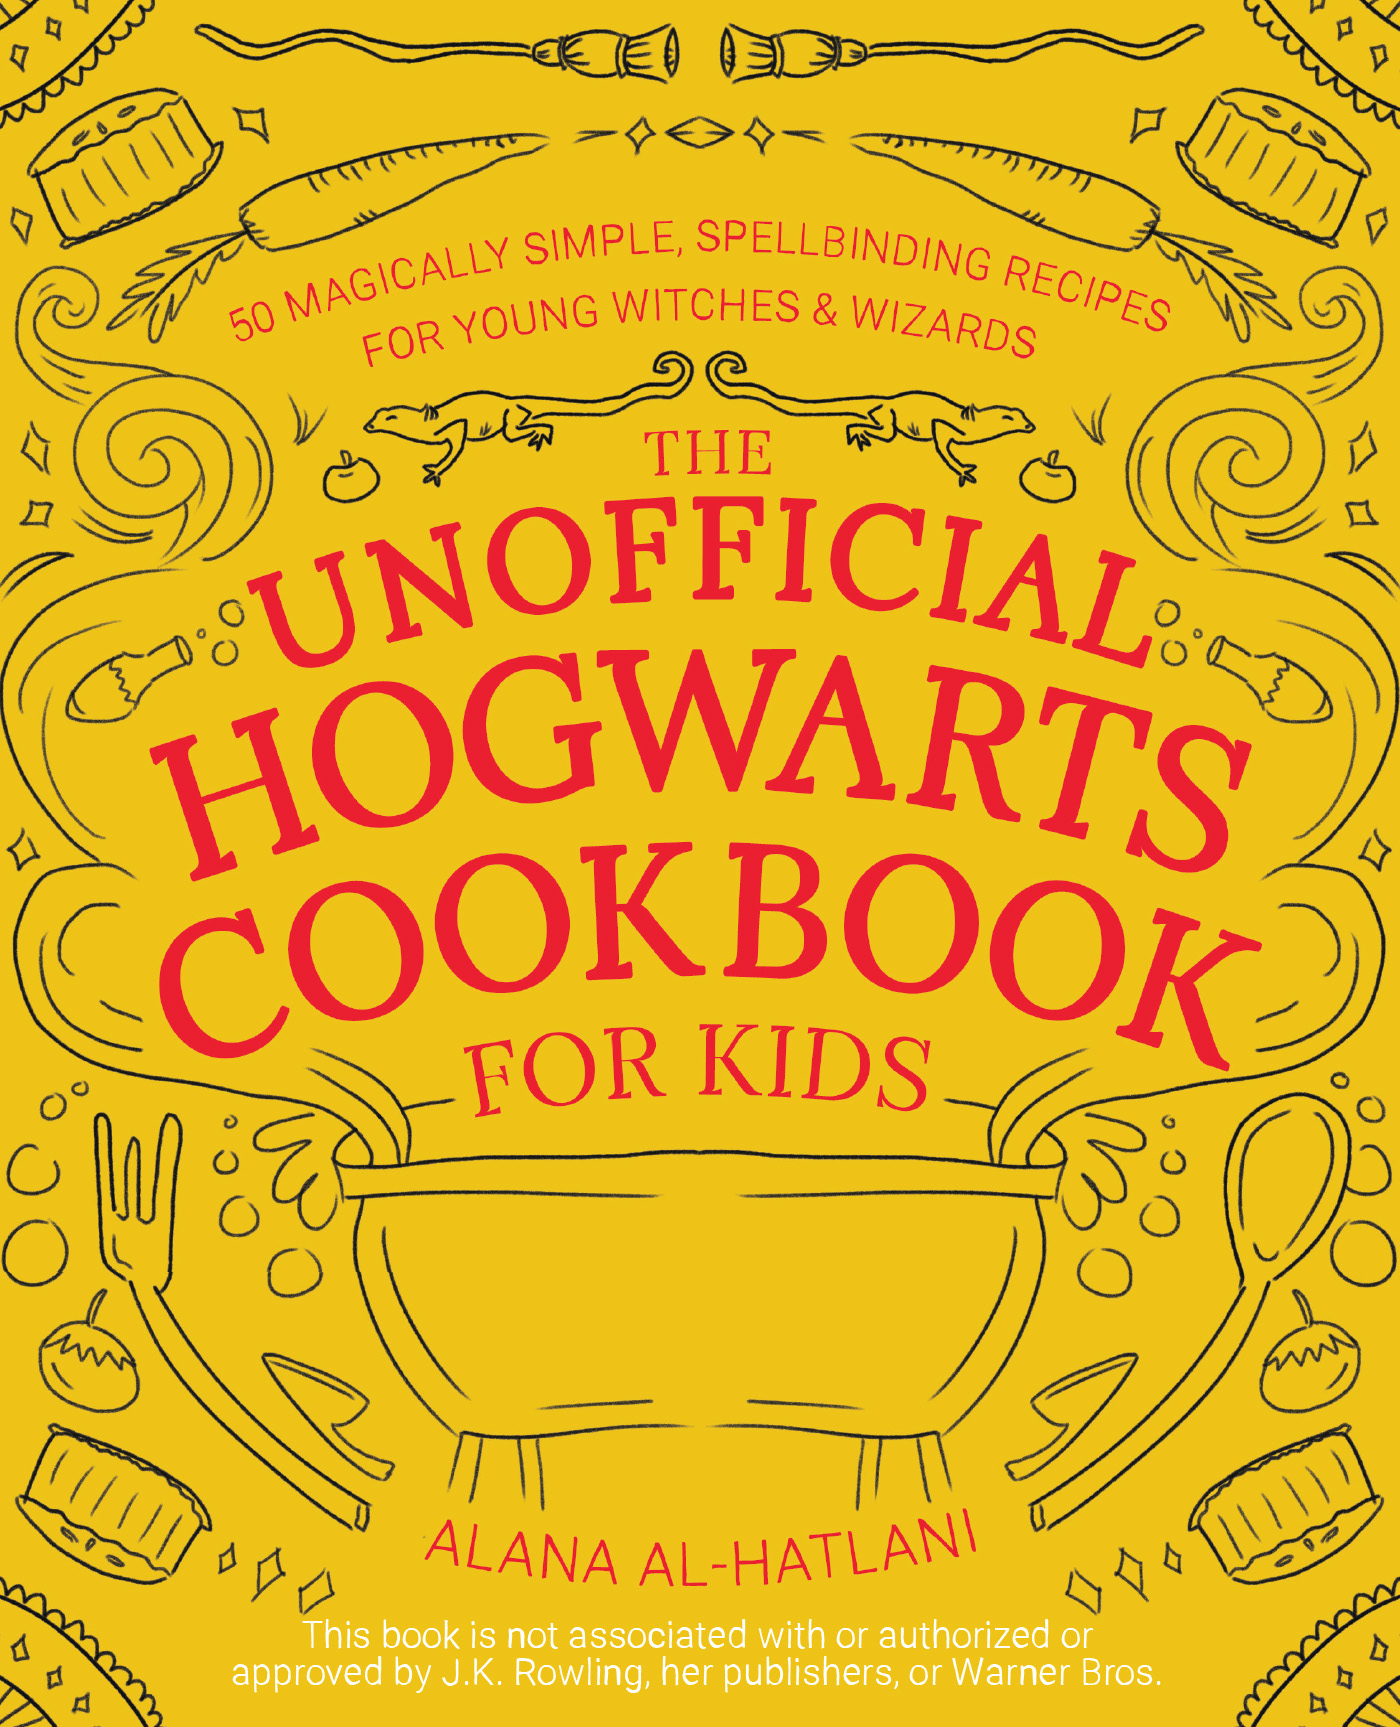 Unofficial Hogwarts Kids Cookbook